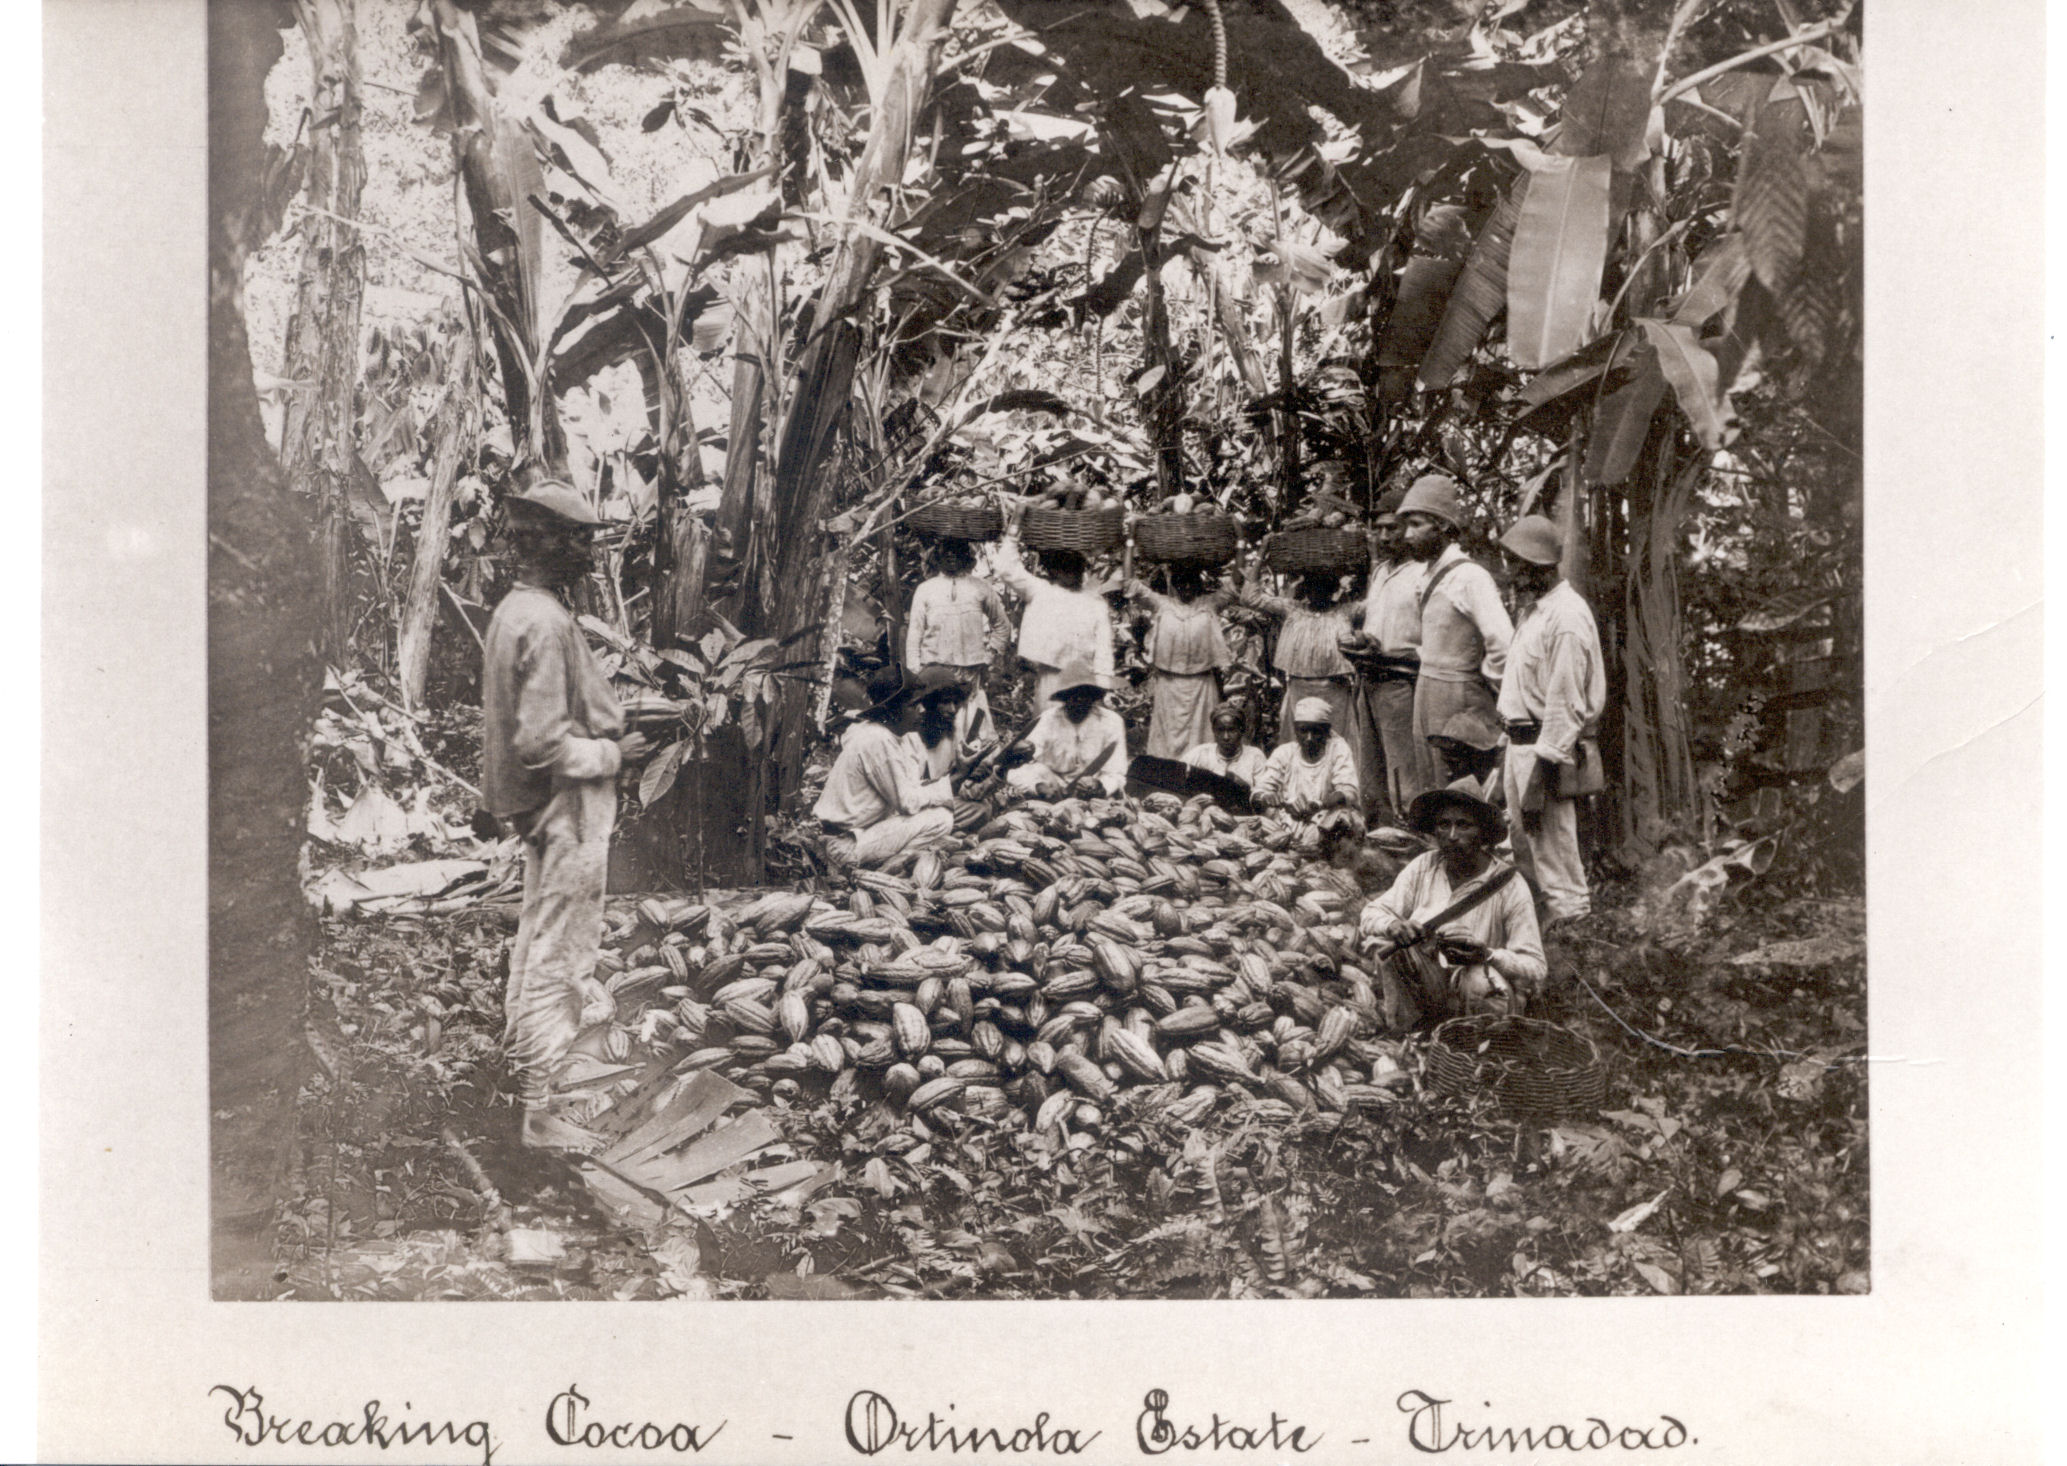 Image: Breaking cocoa - Trinidad